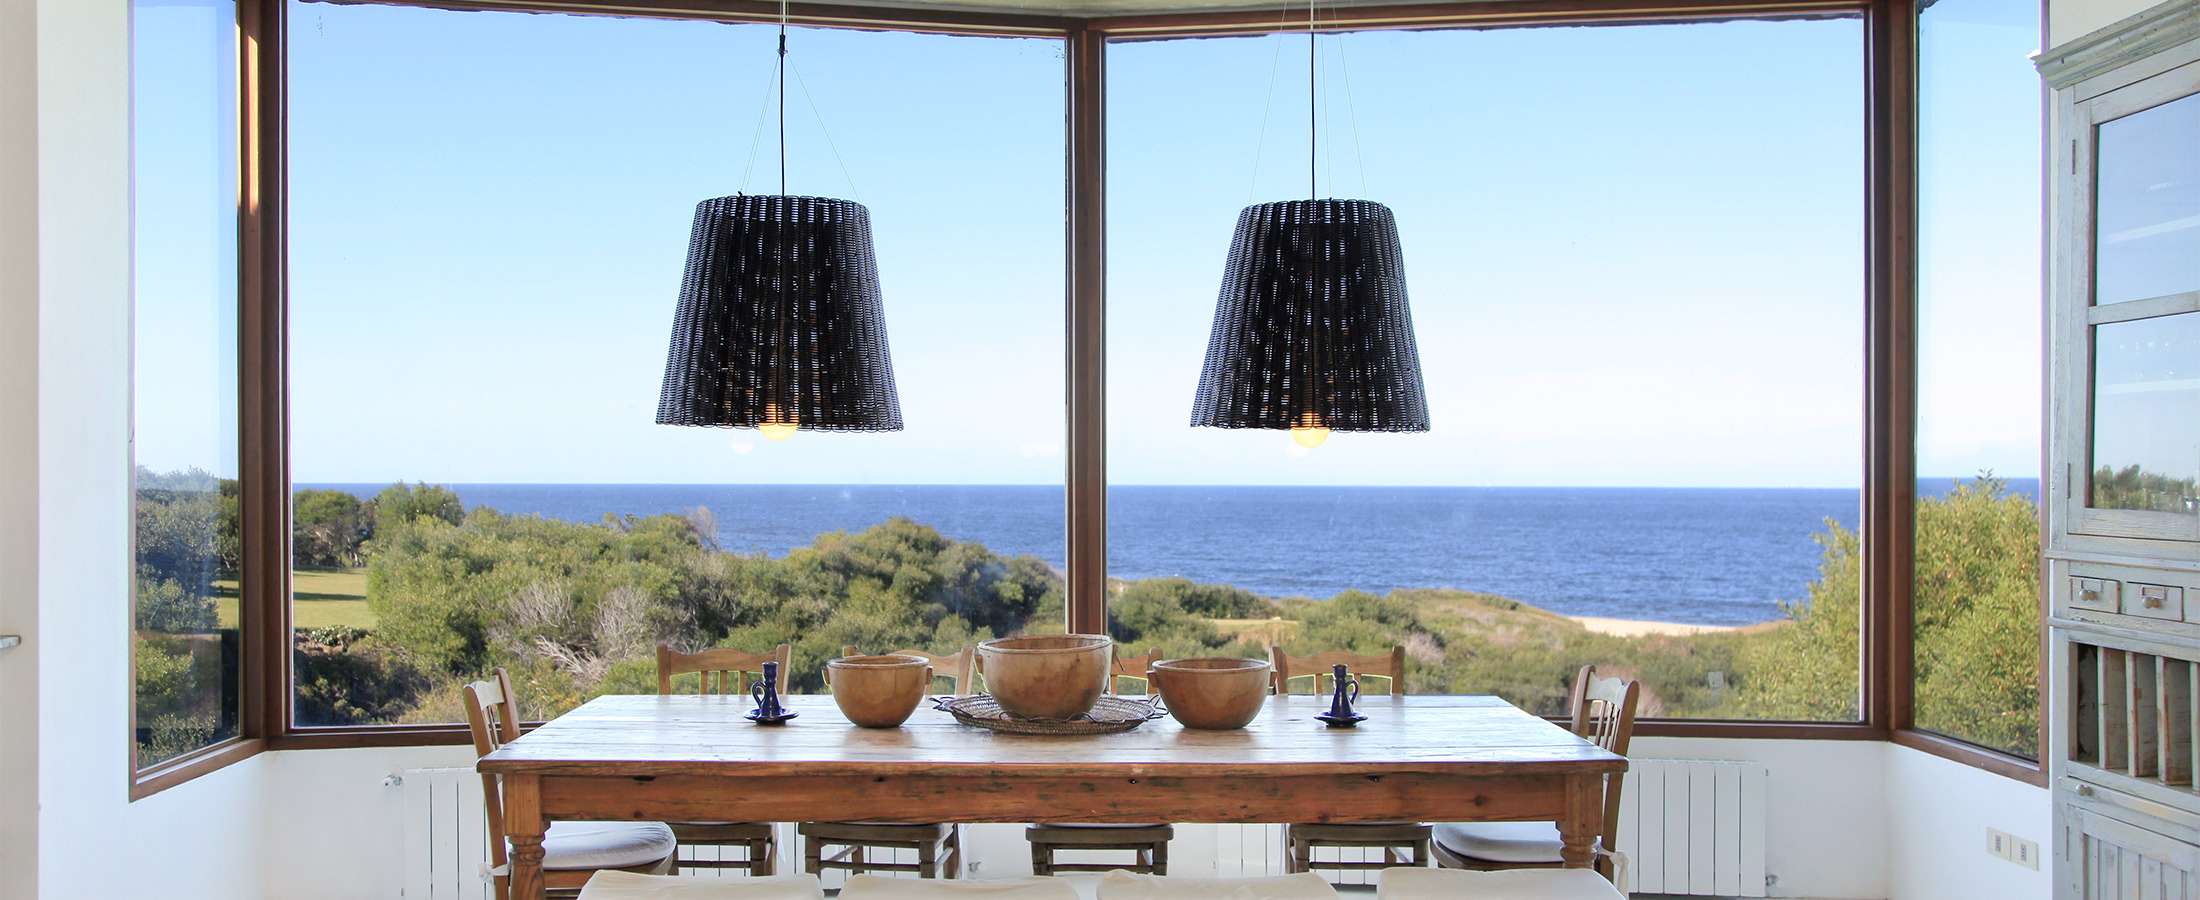 Dos lámparas en una casa frente la playa, y el mar en el horizonte